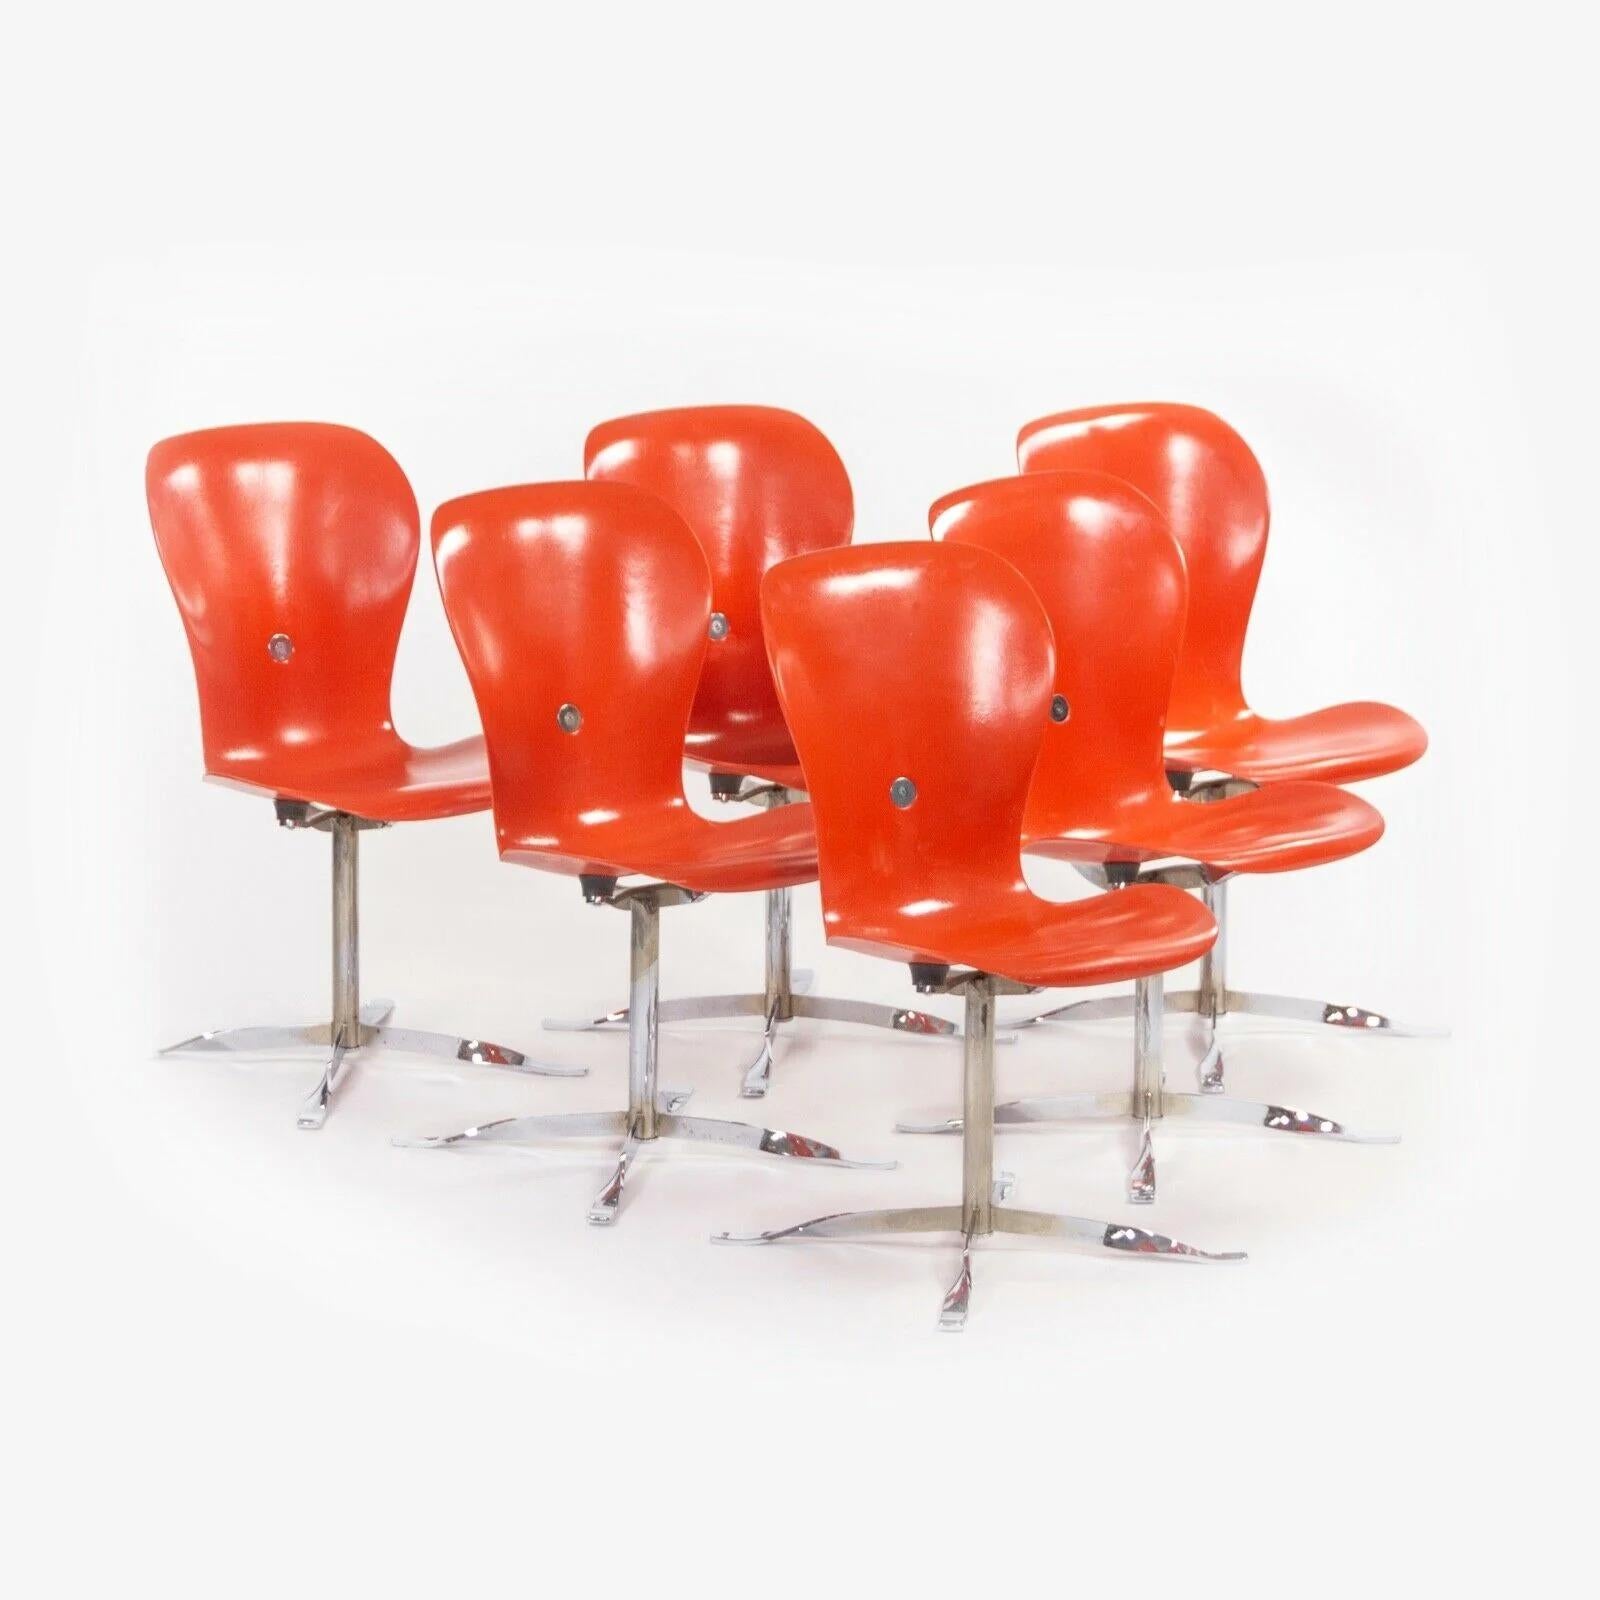 Zum Verkauf steht ein wunderschönes Set von Ion Esszimmerstühlen, entworfen von Gideon Kramer und hergestellt von American Desk Corporation. Diese originellen und ikonischen Stücke wurden erstmals für das Drehrestaurant auf der Spitze der Space